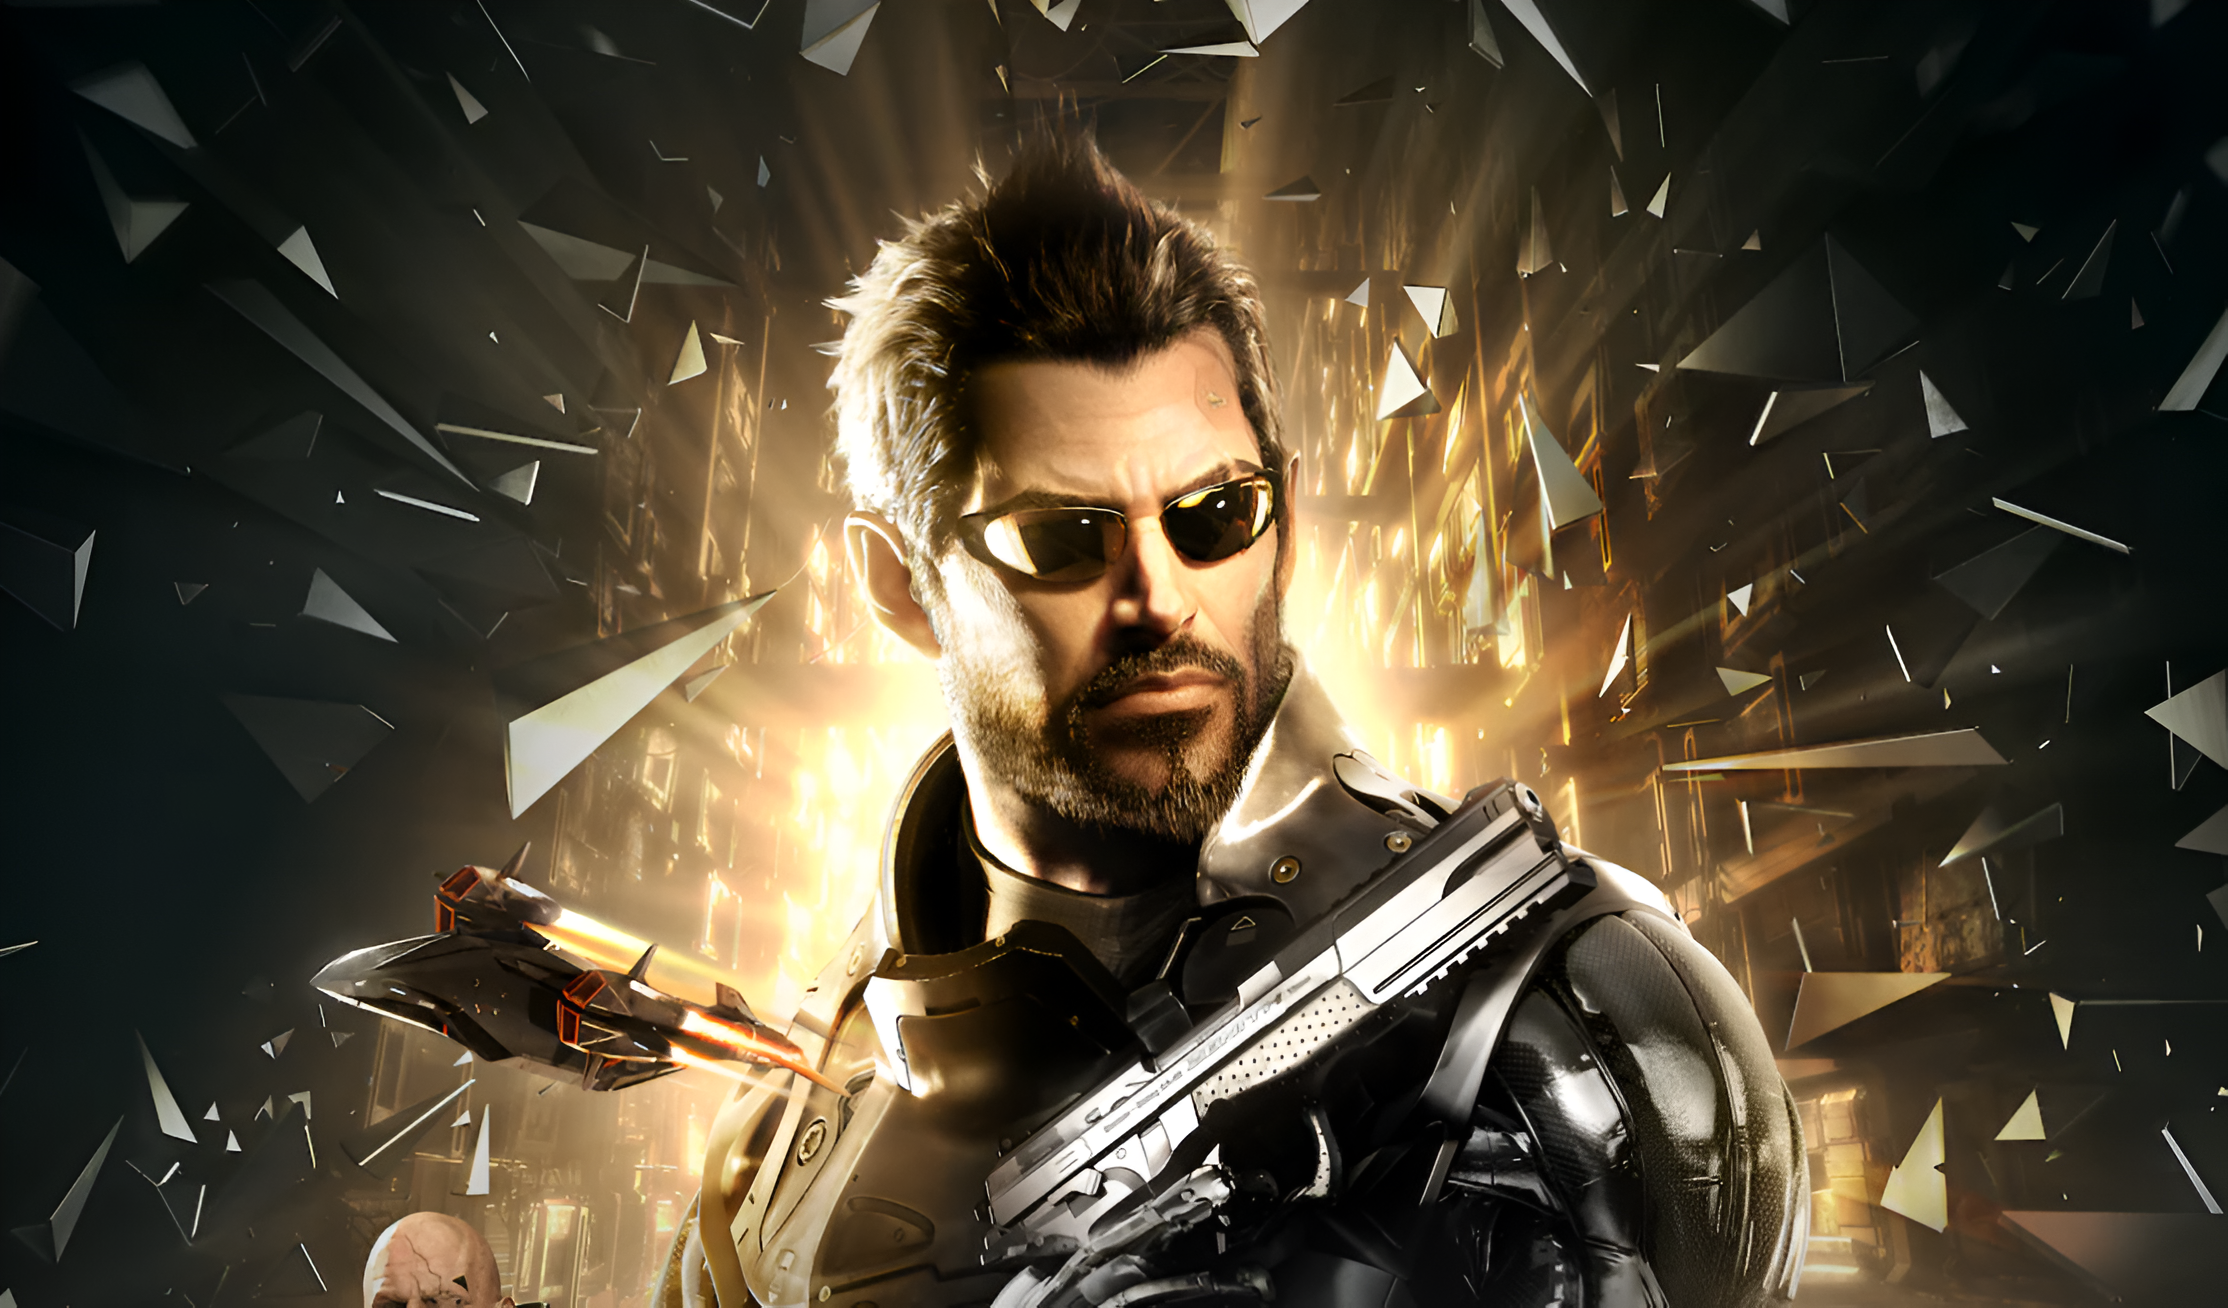 Mężczyzna w futurystycznym pancerzu z gry Deus Ex i okularach przeciwsłonecznych trzymający broń palną, otoczony przez fraktalne odłamki szkła i intensywne światło w tle. Gra dostepna w Epic Games Store za darmo